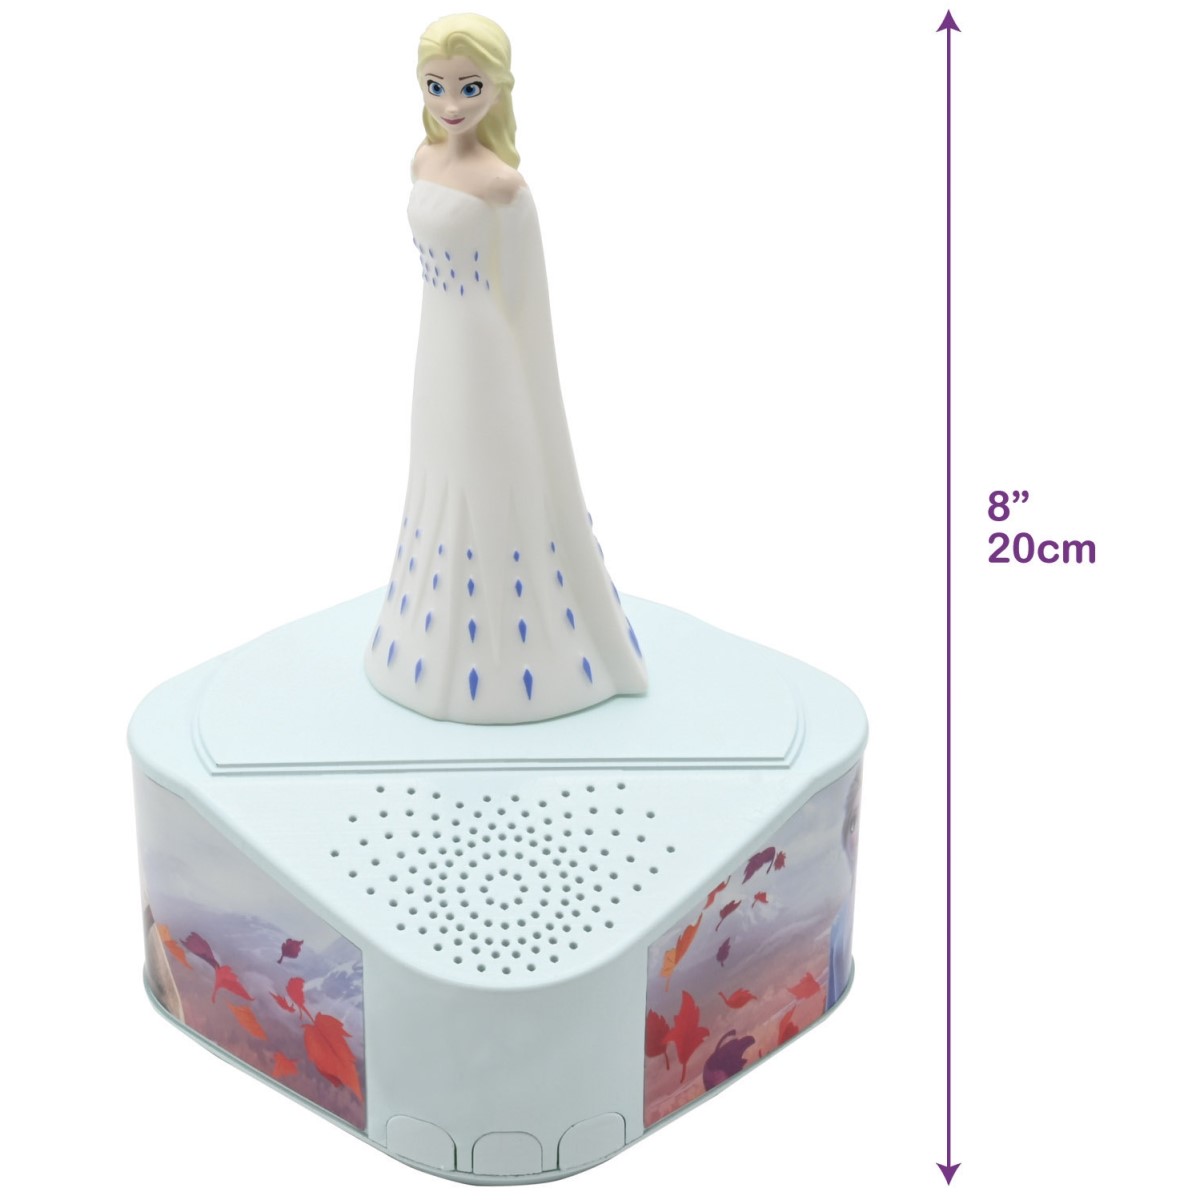 Frozen Elsa Bluetooth-Lautsprecher mit beleuchteter 3D Figur Elsa Anna